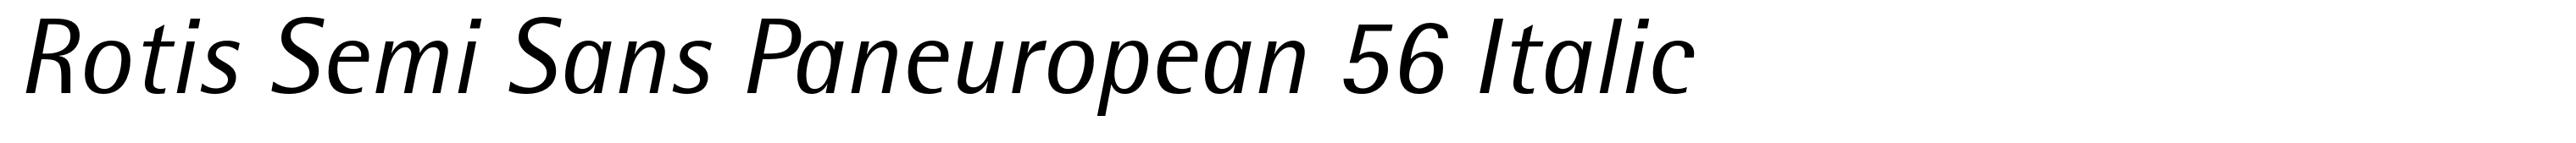 Rotis Semi Sans Paneuropean 56 Italic